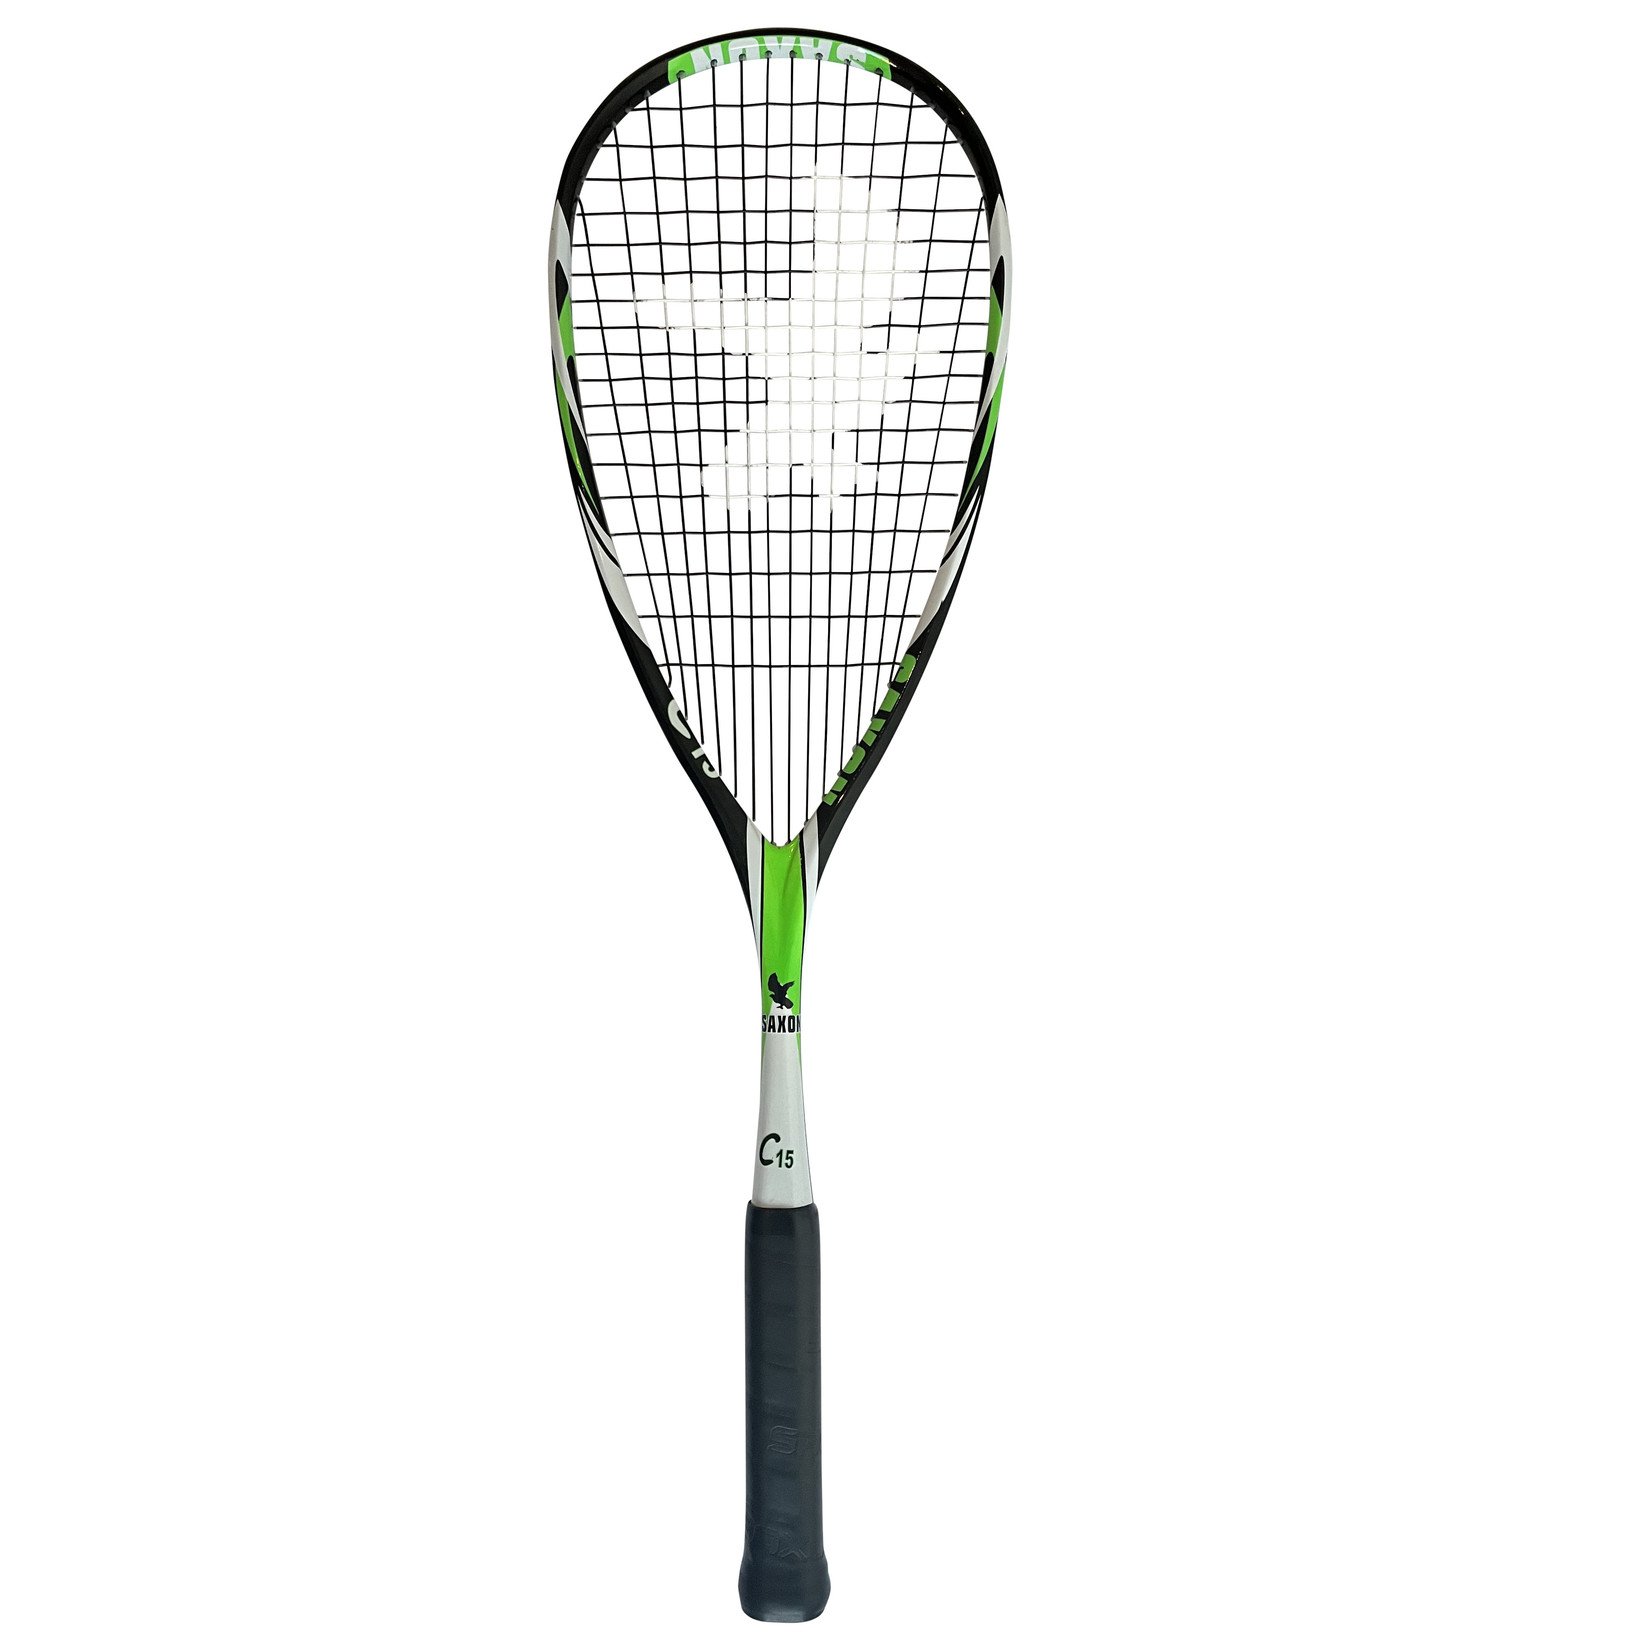 Saxon C15 squashracket